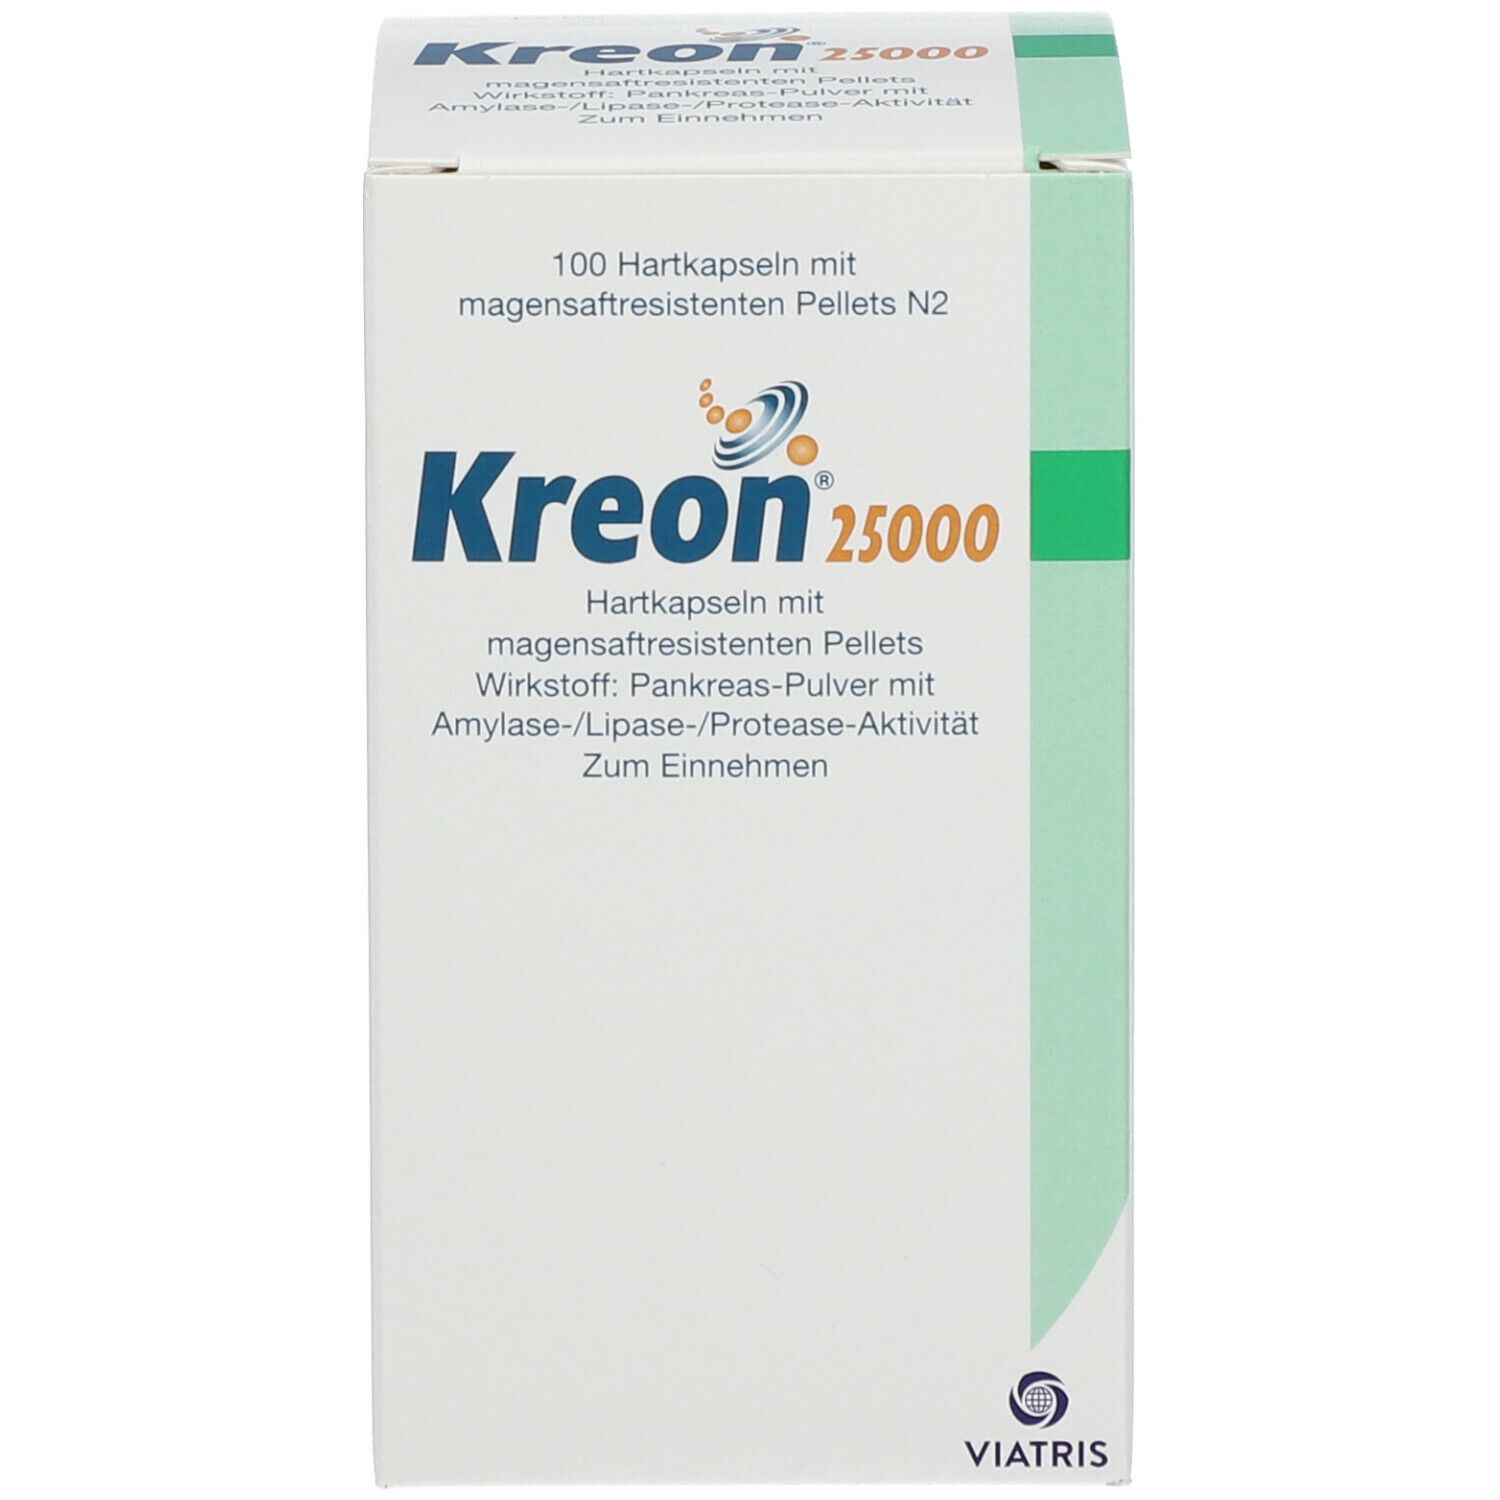 Kreon® 25 000 Kapseln